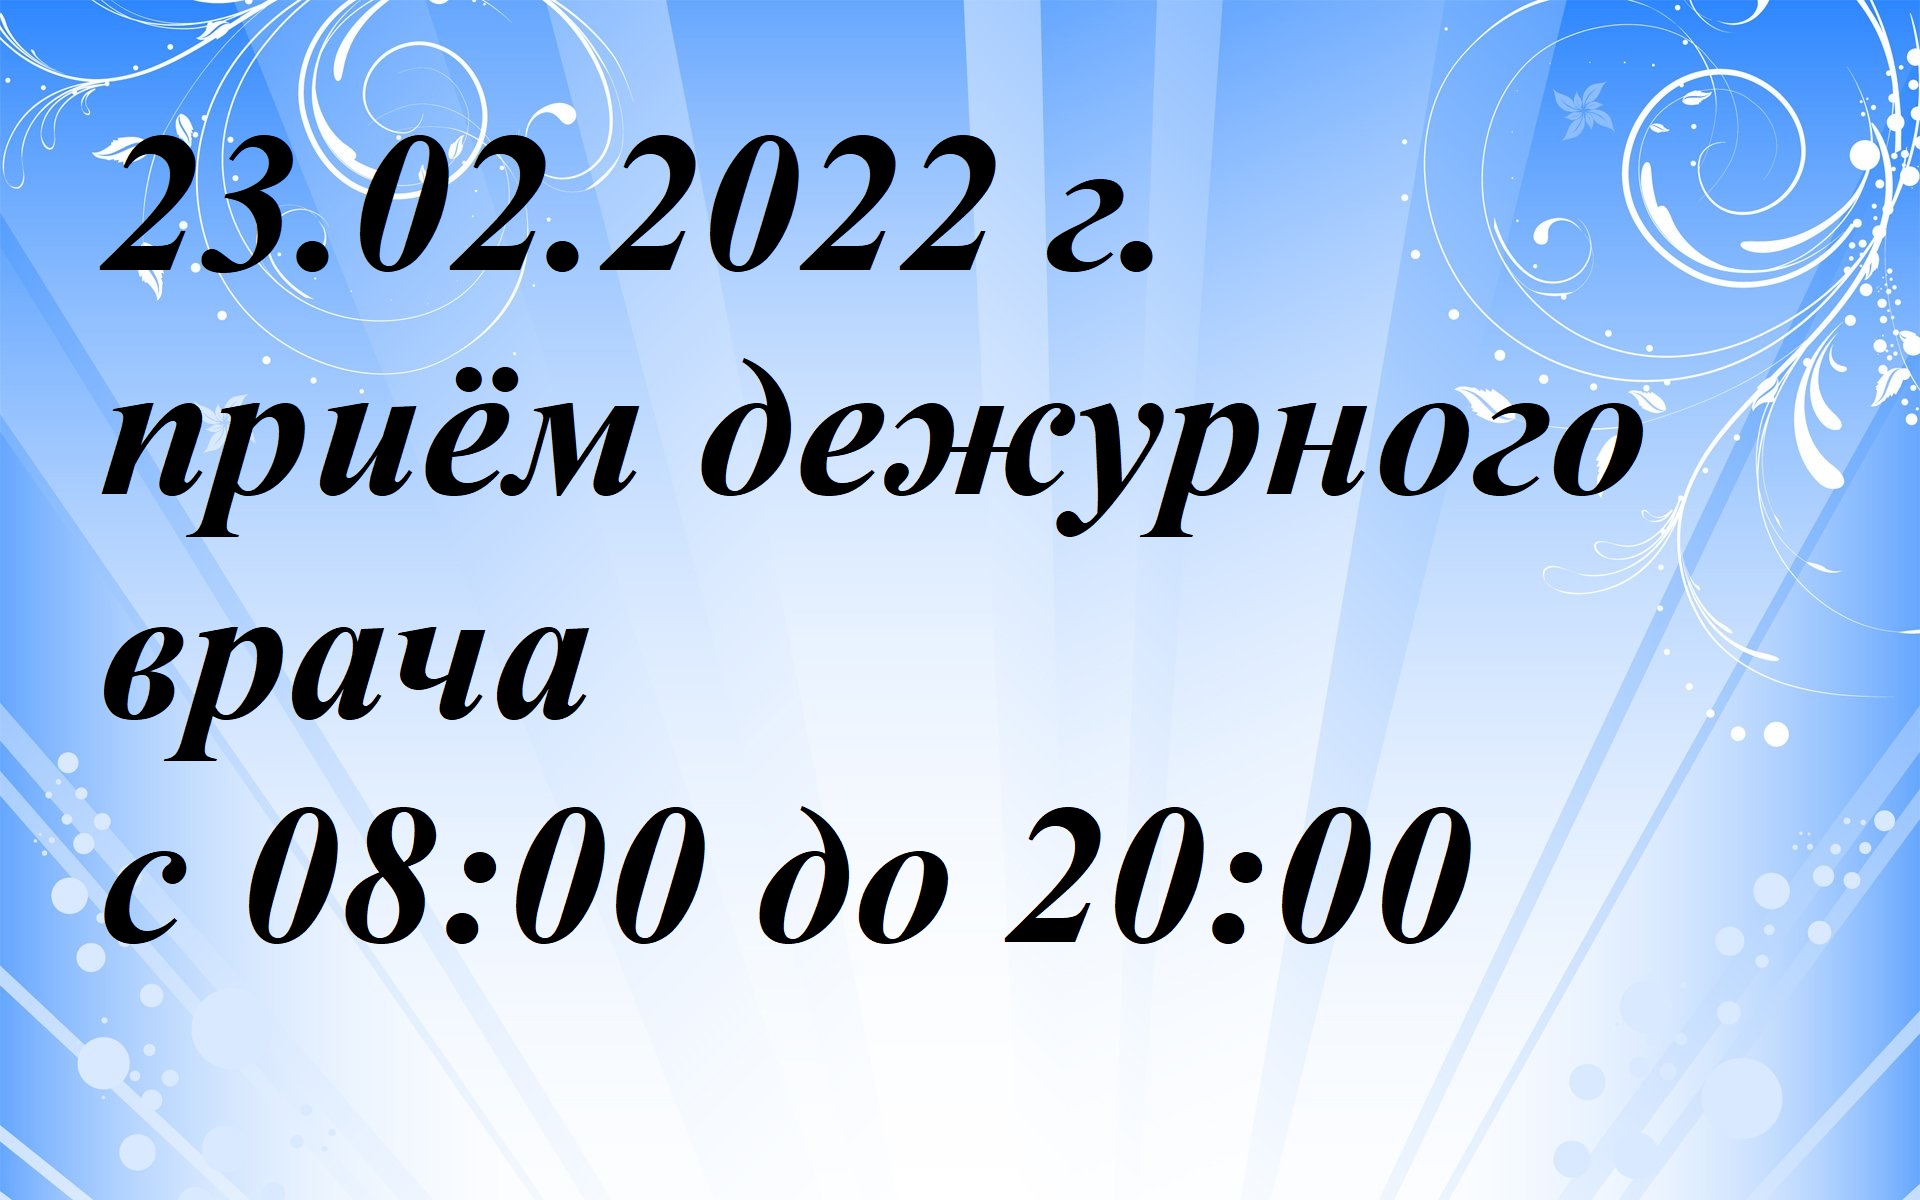 23.02.2022 г. приём дежурного врача с 08:00 до 20:00